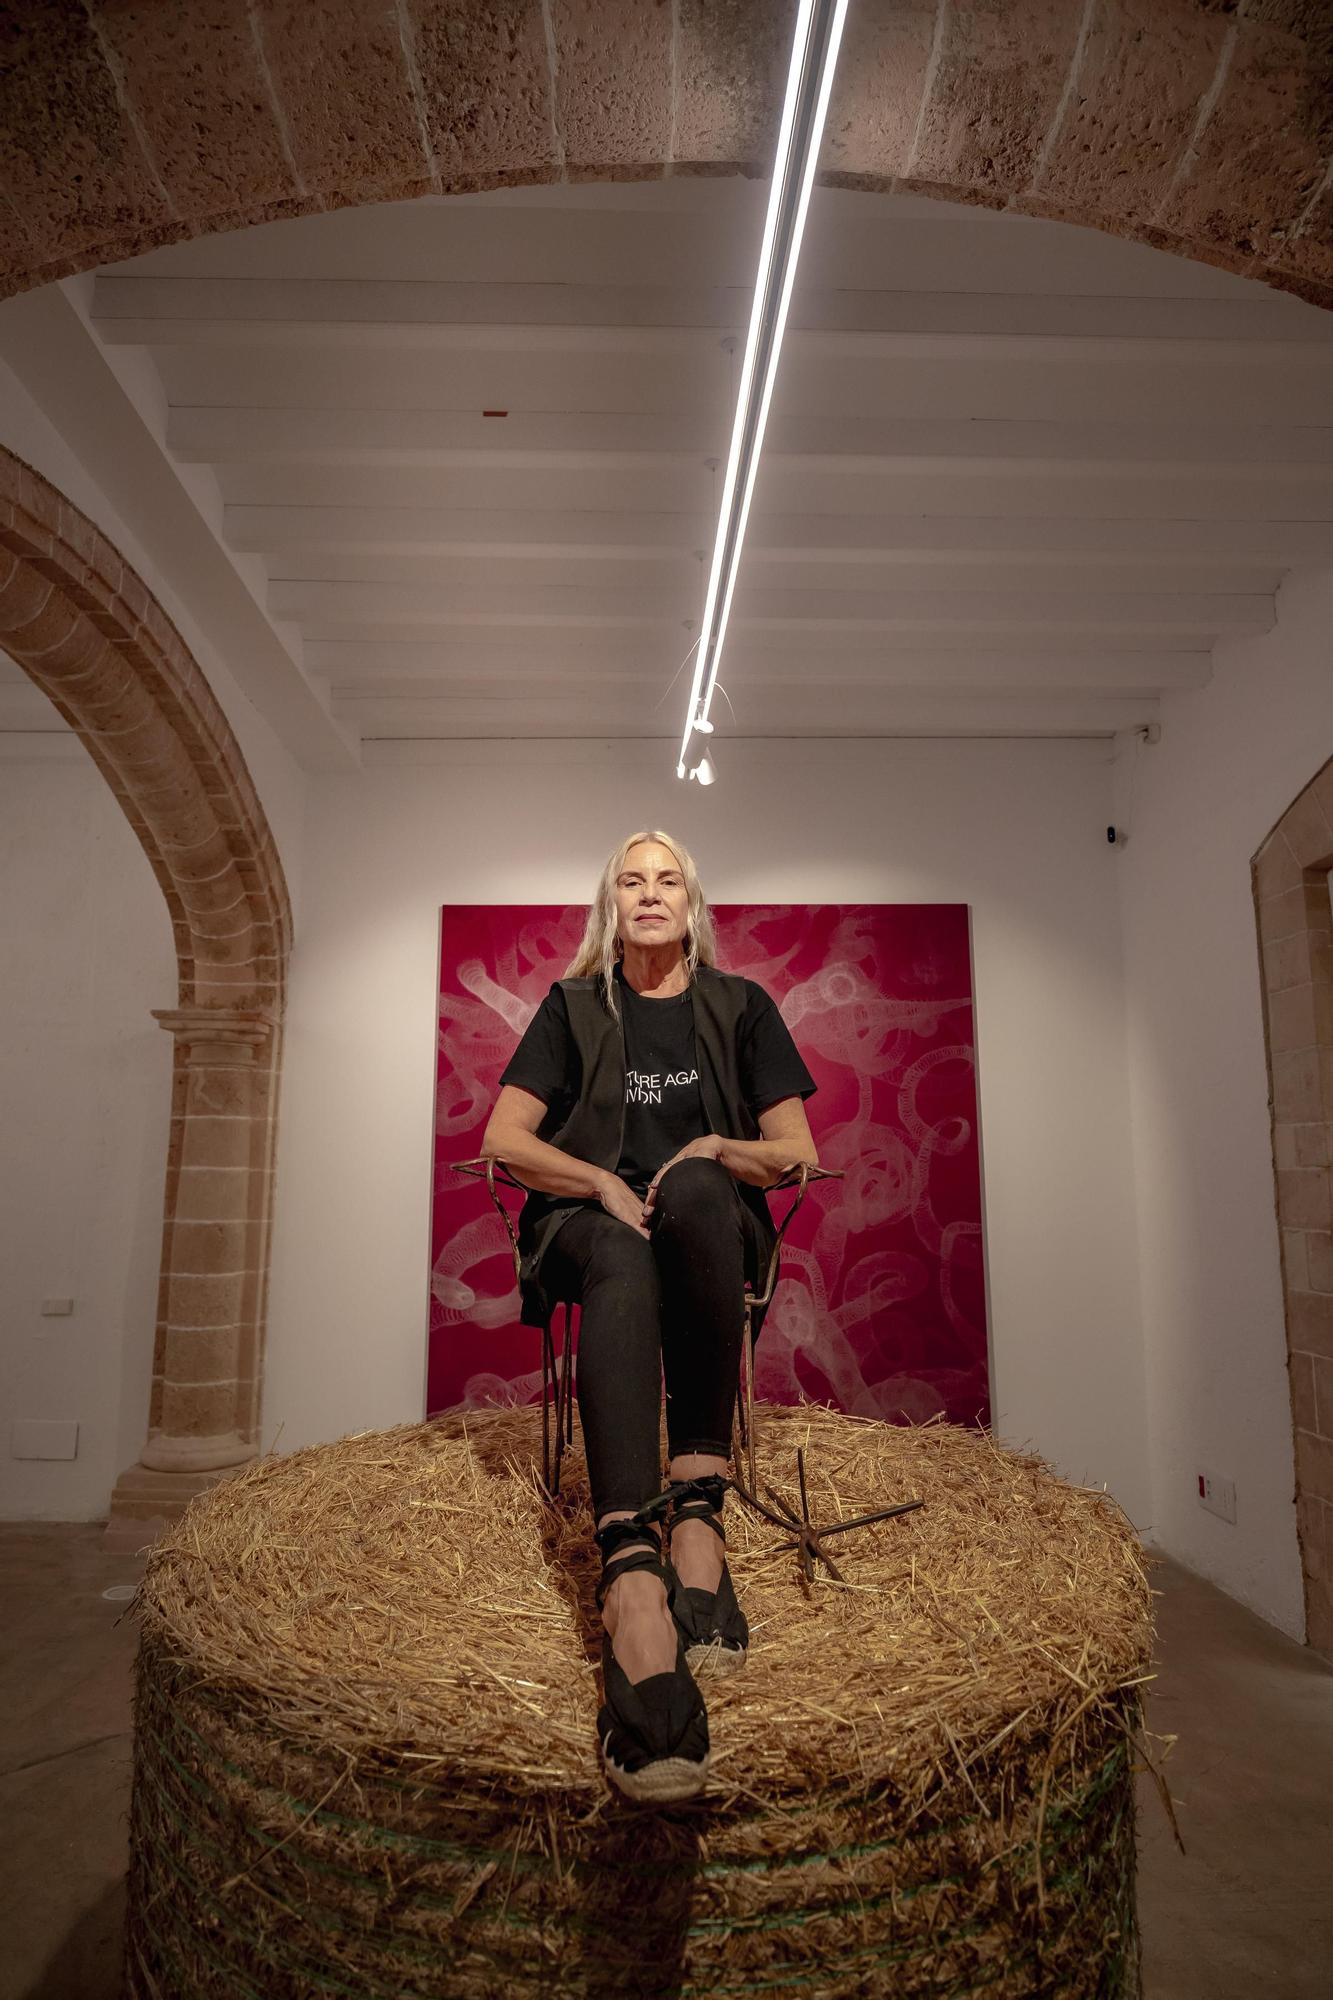 Susy Gómez expone 'Campos penetrables' en la galería Baró